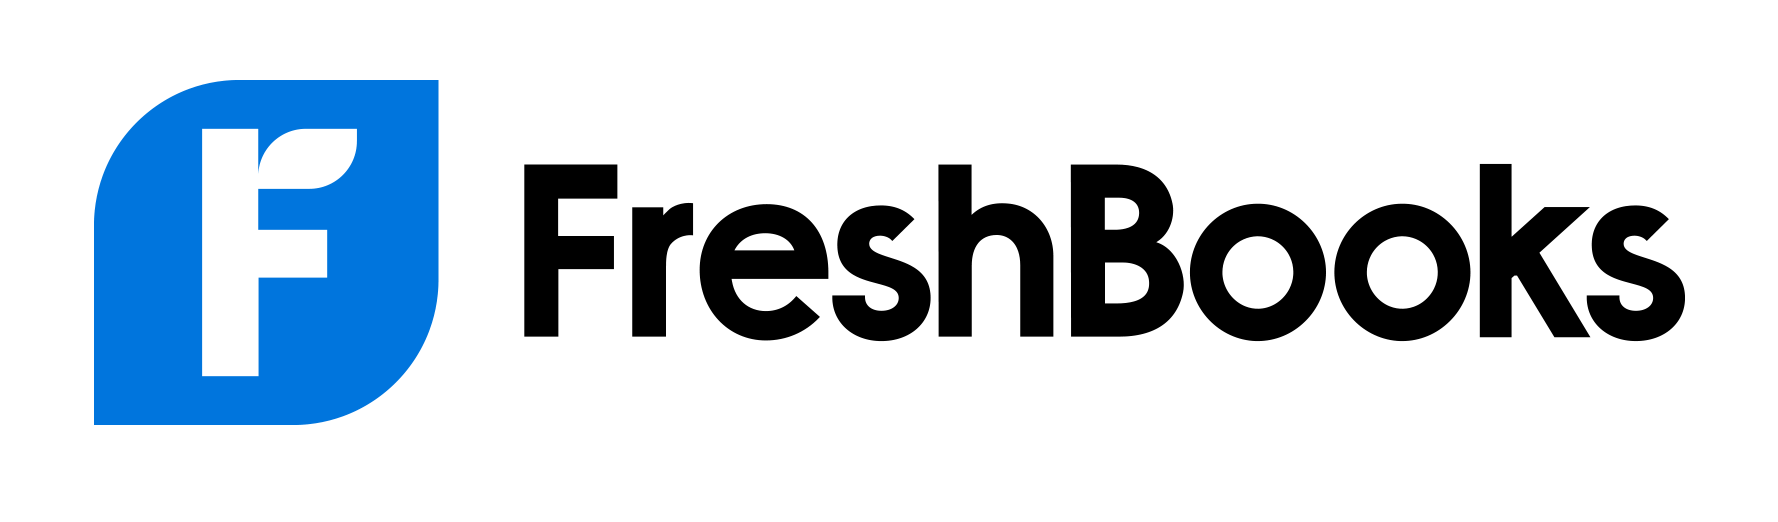 freshbooks-logo-1